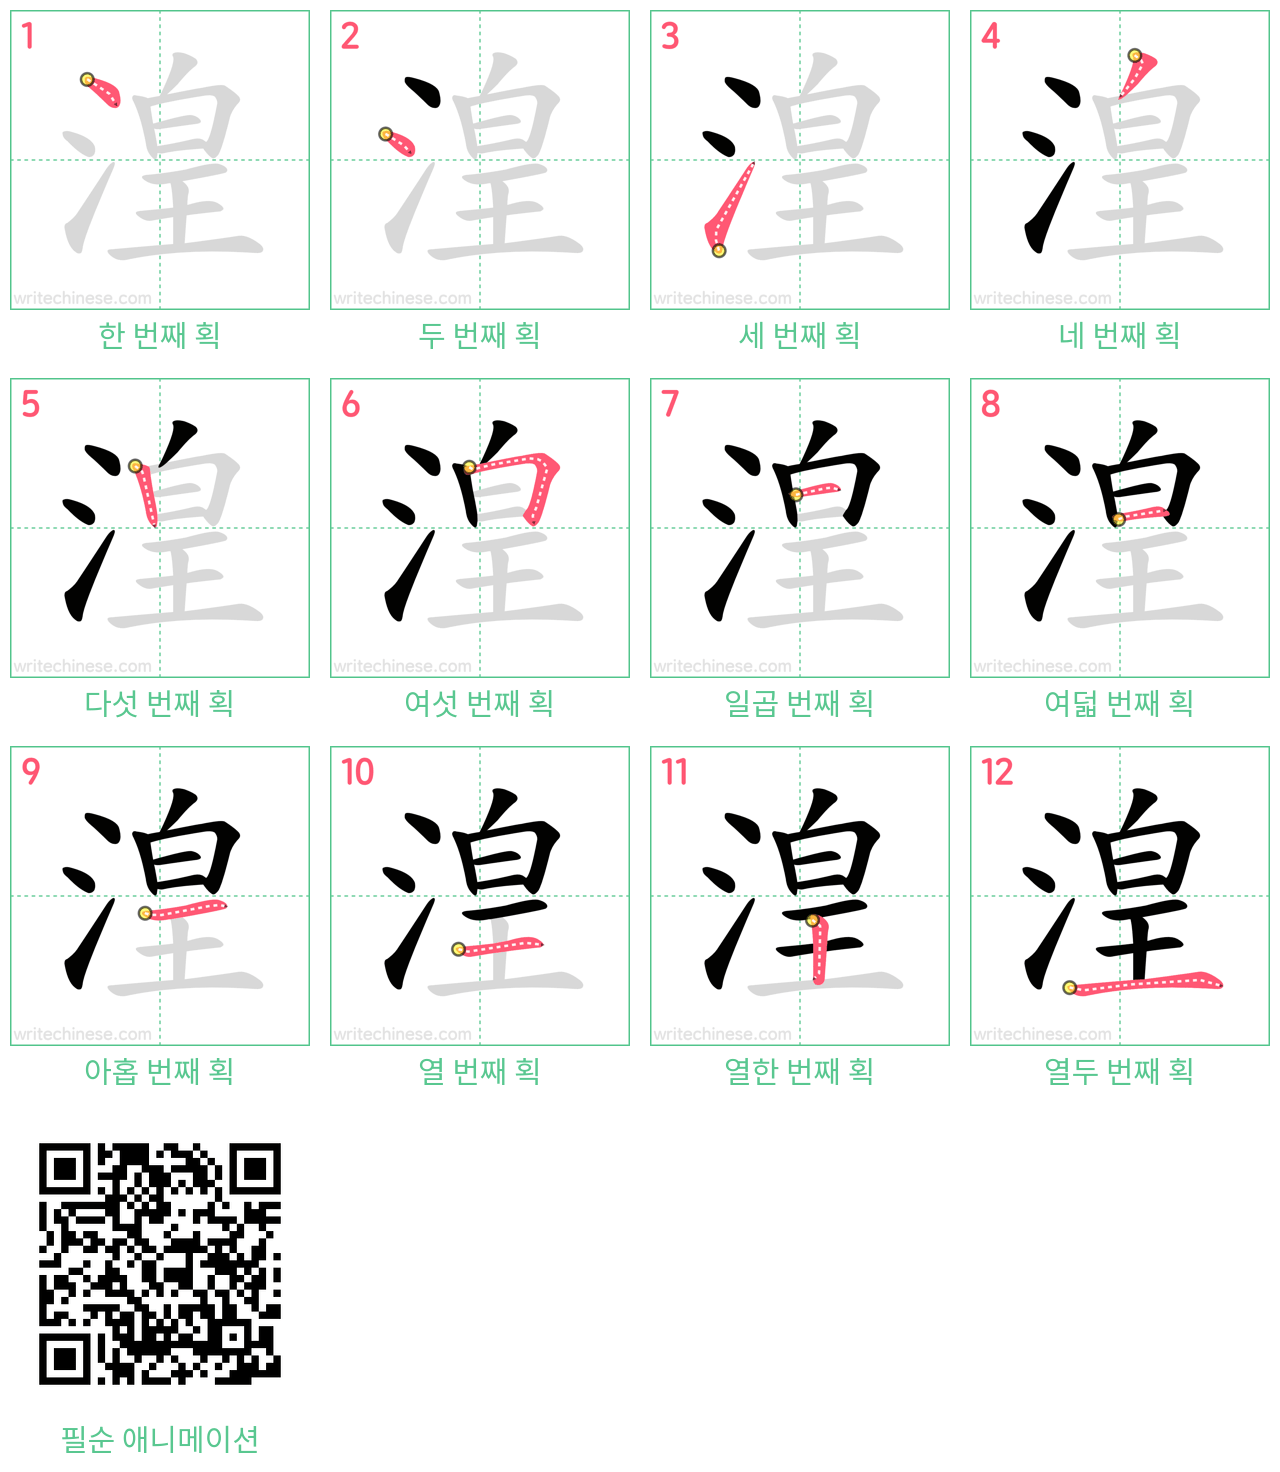 湟 step-by-step stroke order diagrams